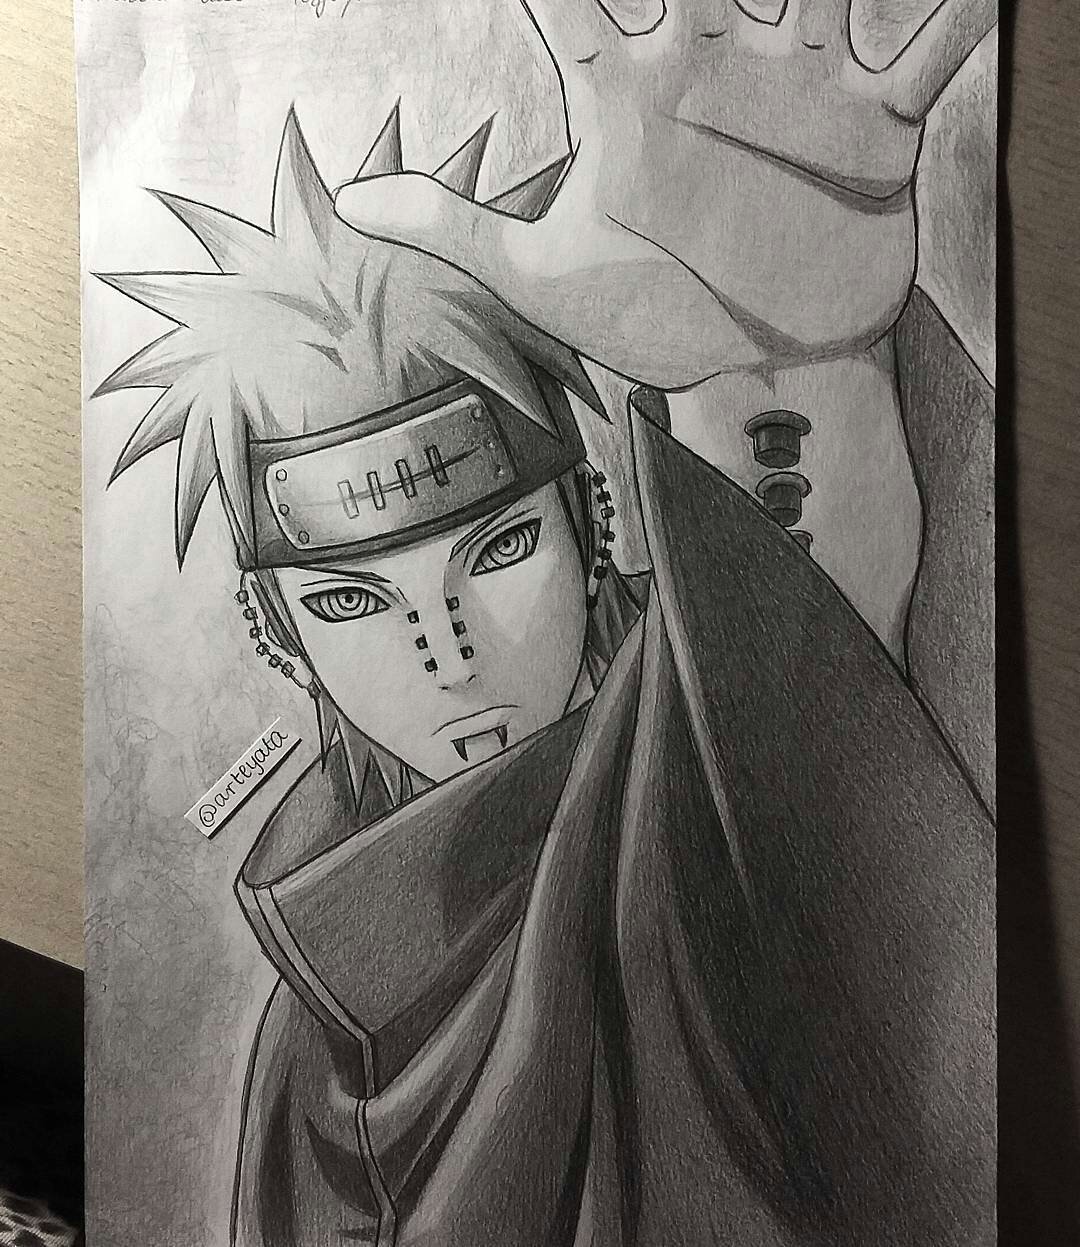 Naruto. Art by @arteyata (Twitter). #Naruto #NarutoShippuden #manga #anime  #art #drawing #illustration.